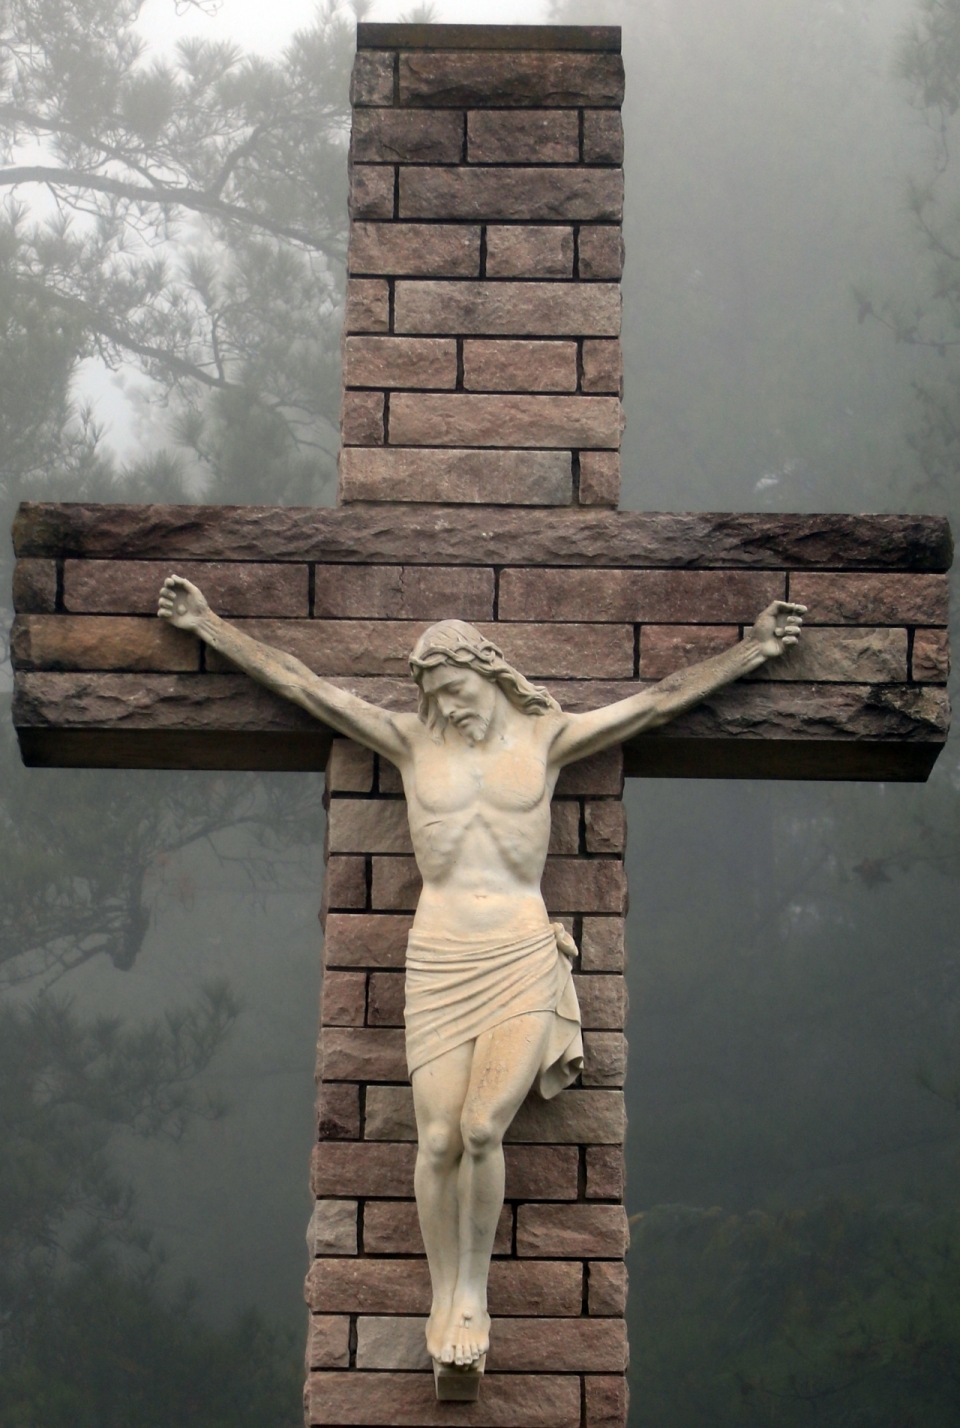 雾气弥漫森林背景红砖十字架上的耶稣雕像